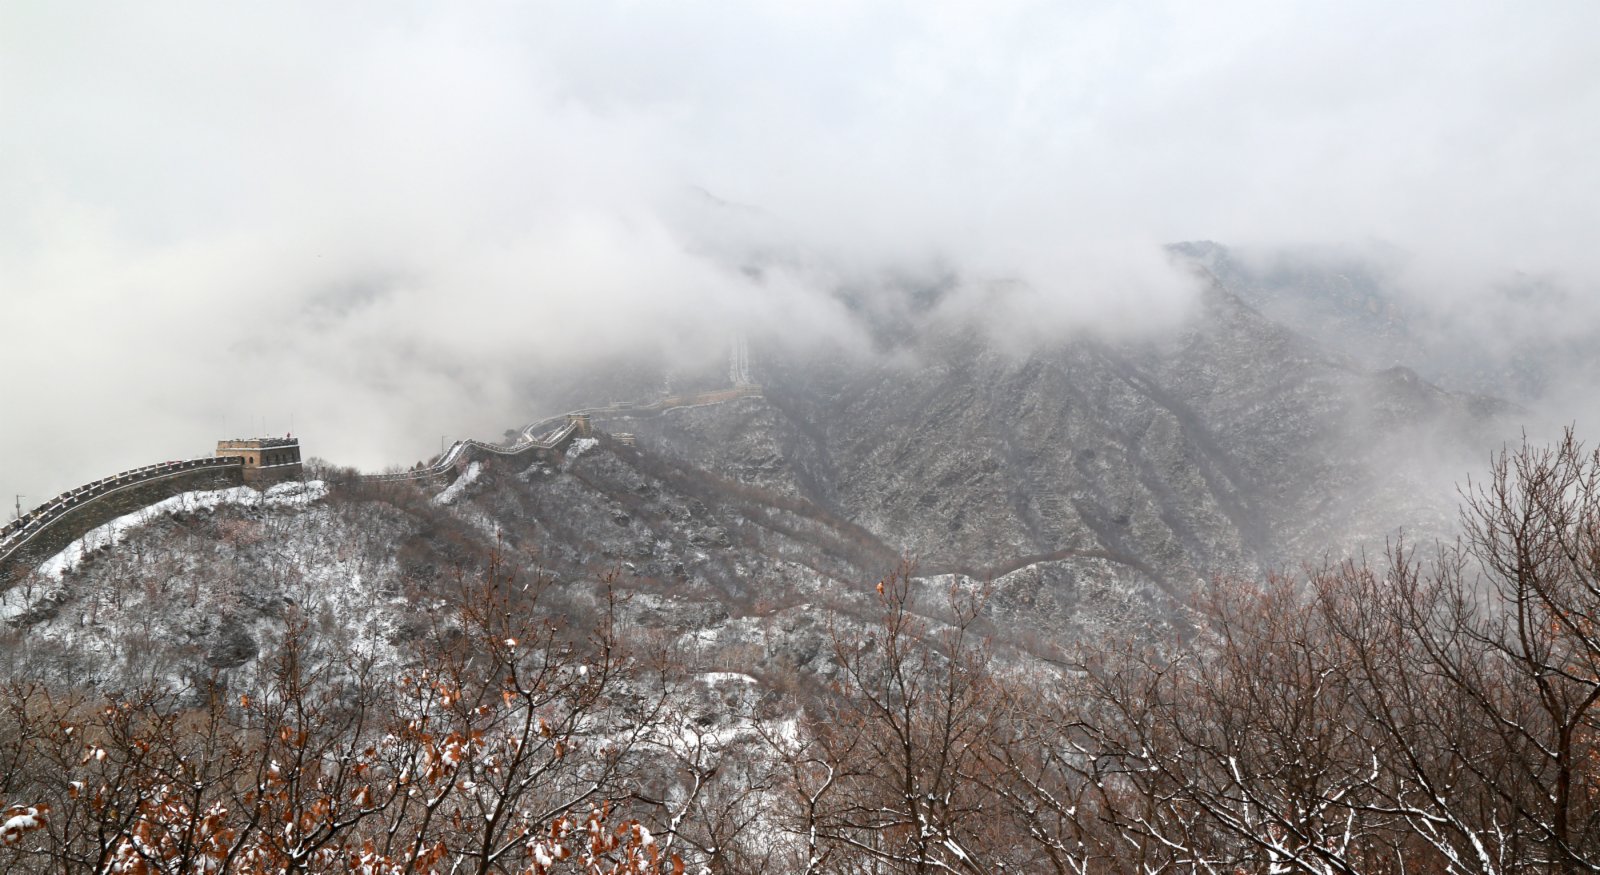  11月21日拍攝的北京懷柔慕田峪長城雪景。